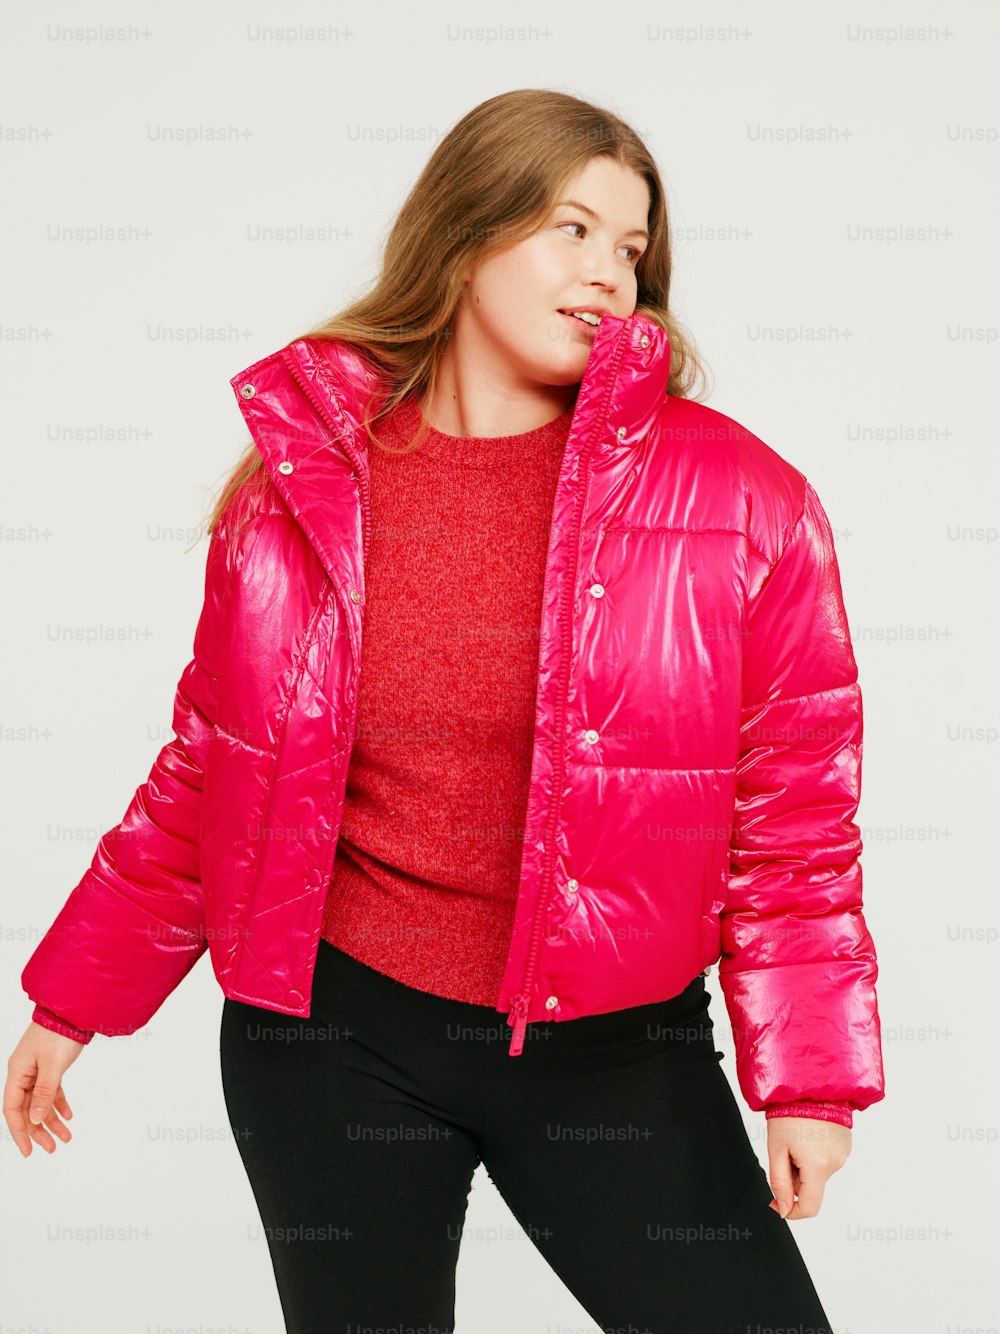 Una mujer con una chaqueta rosa brillante y pantalones negros